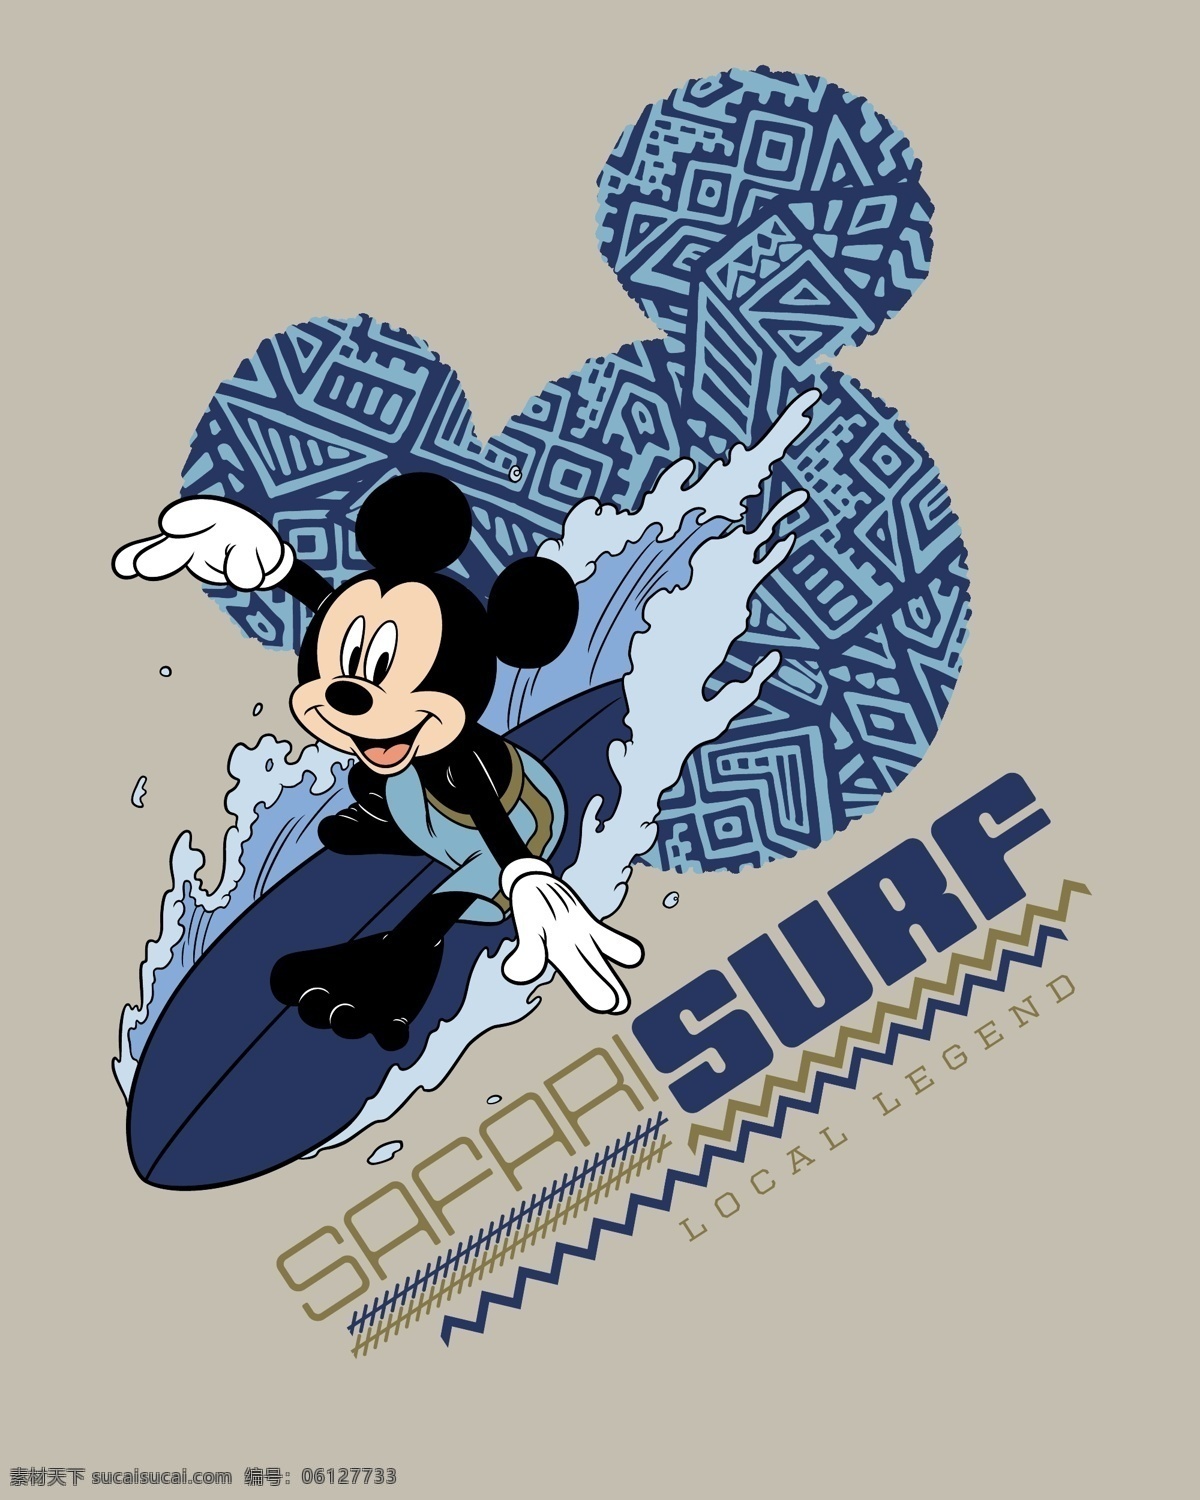 米老鼠 冲浪 矢量图 运动风 迪士尼合集 迪士尼卡通 迪士尼 动漫动画 动漫人物